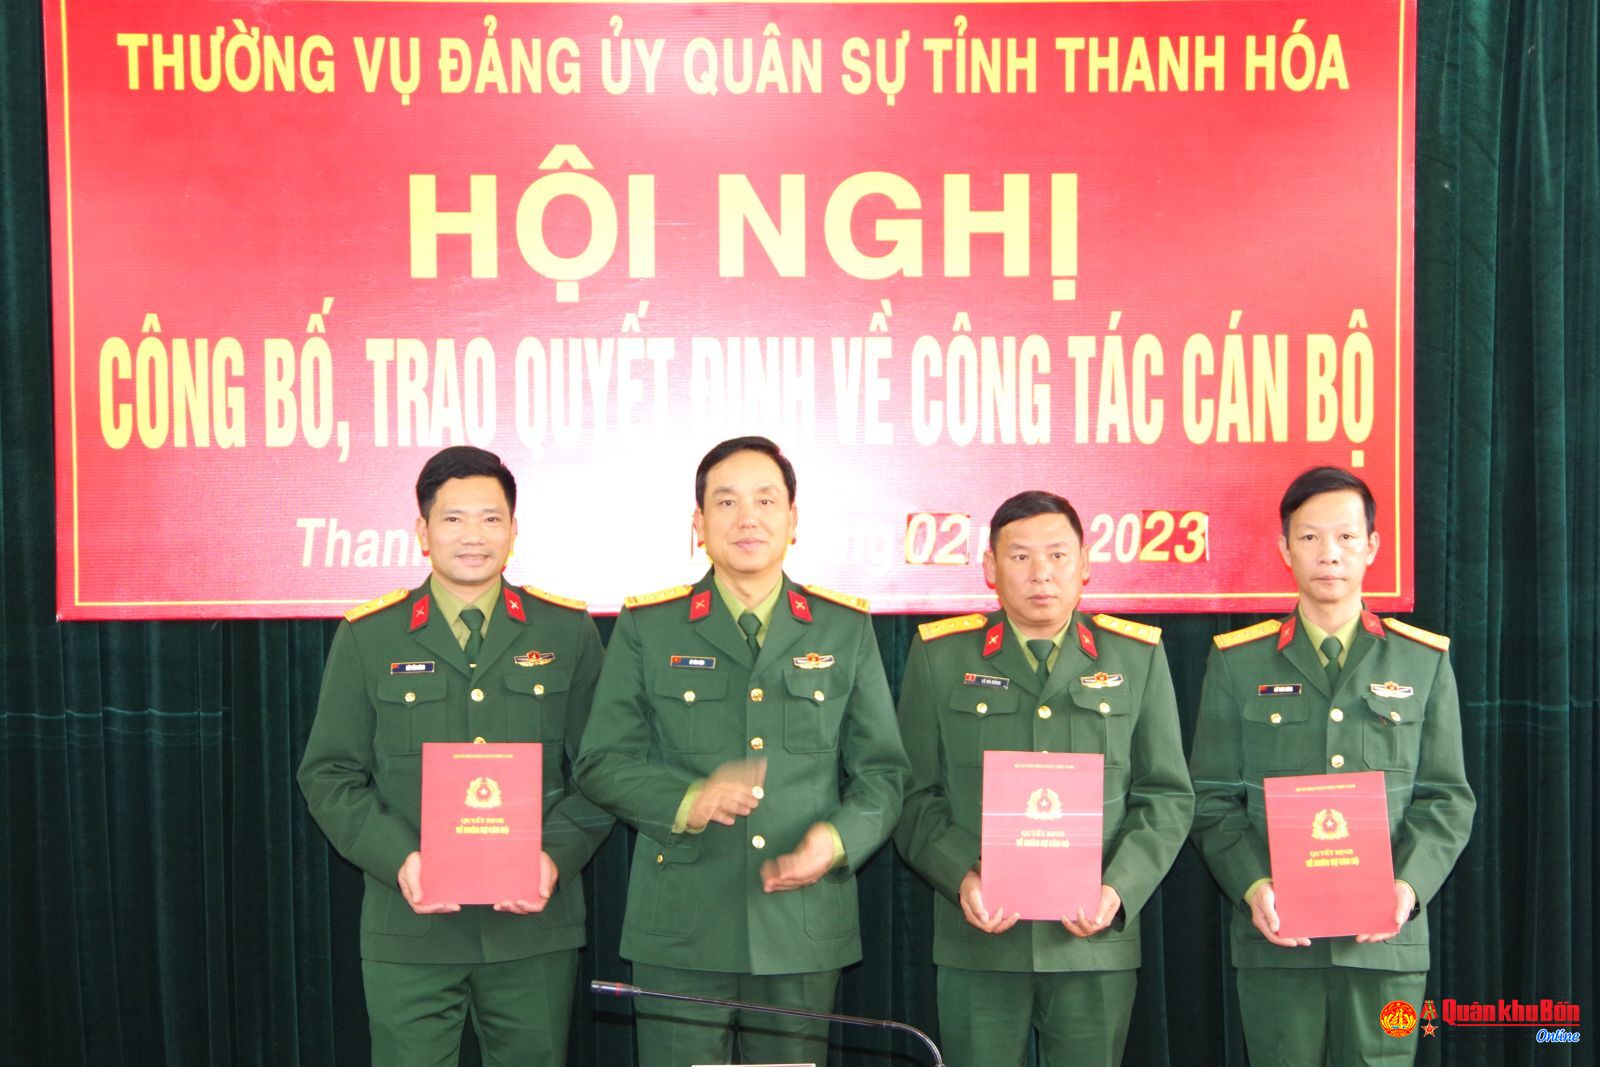 Đảng ủy Quân sự tỉnh Thanh Hóa: Công bố, trao quyết định về công tác cán bộ